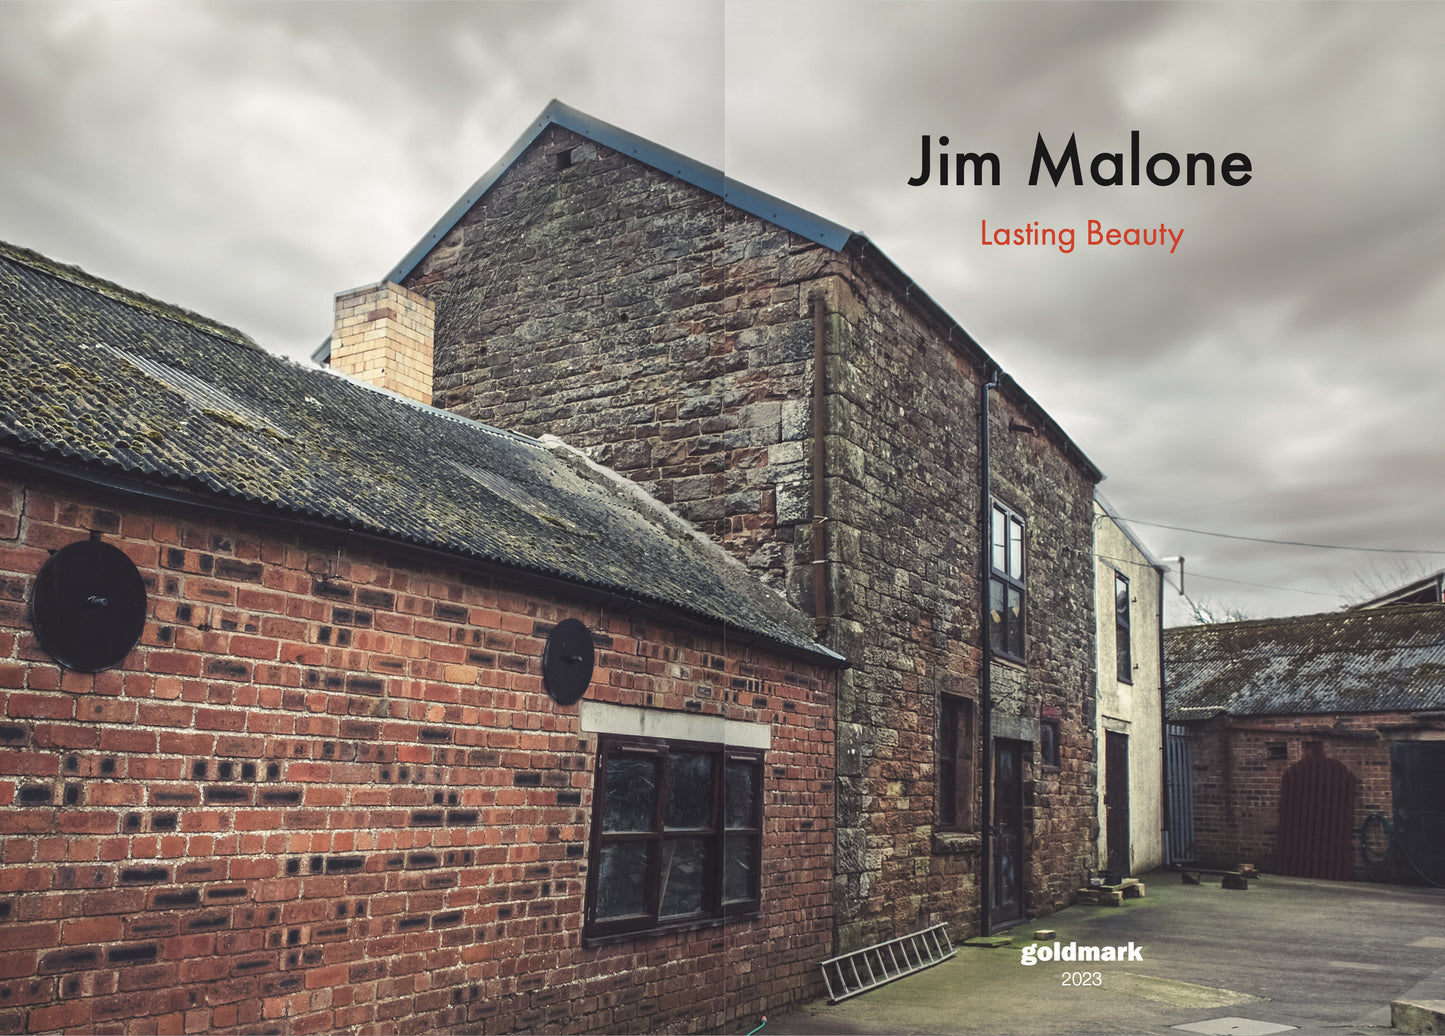 Jim Malone - Lasting Beauty